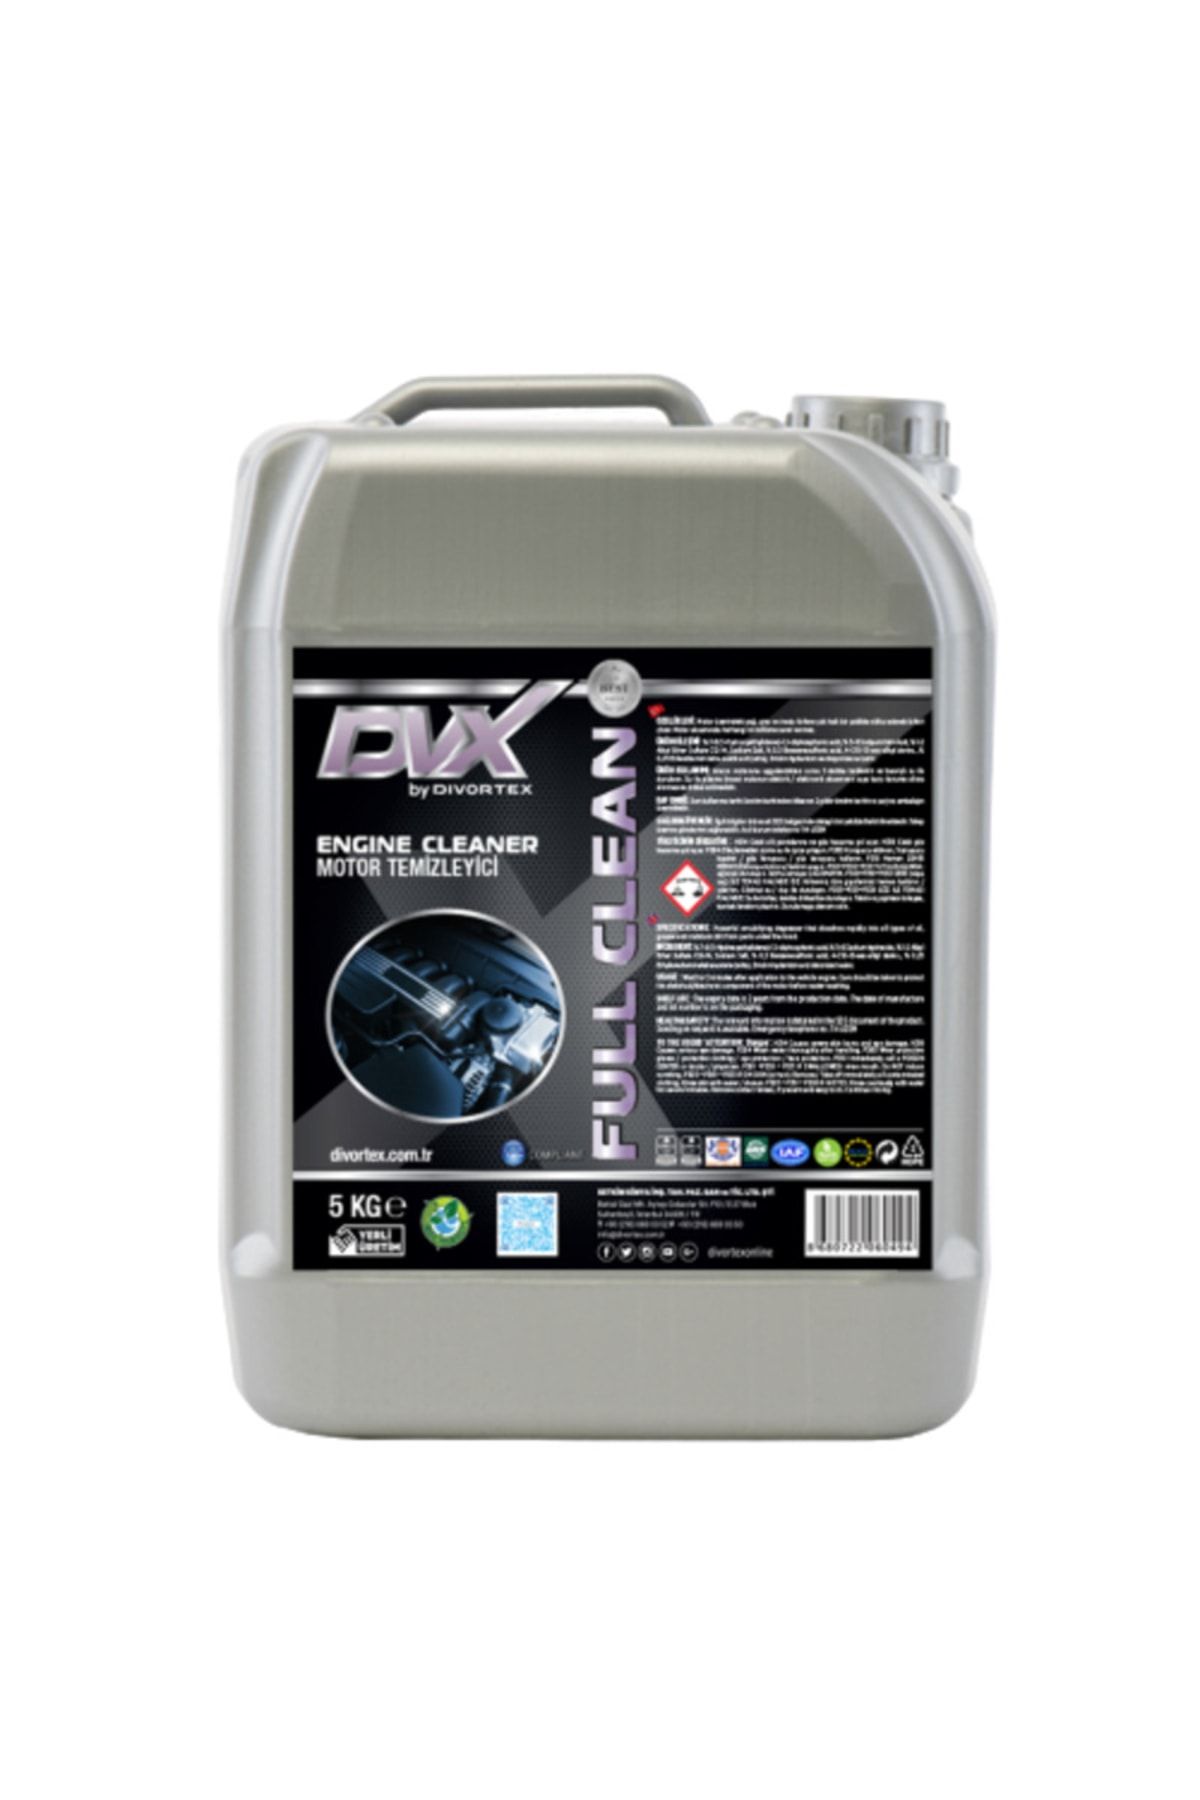 Divortex Full Clean Motor Temizleme Sıvısı 5 Kg.